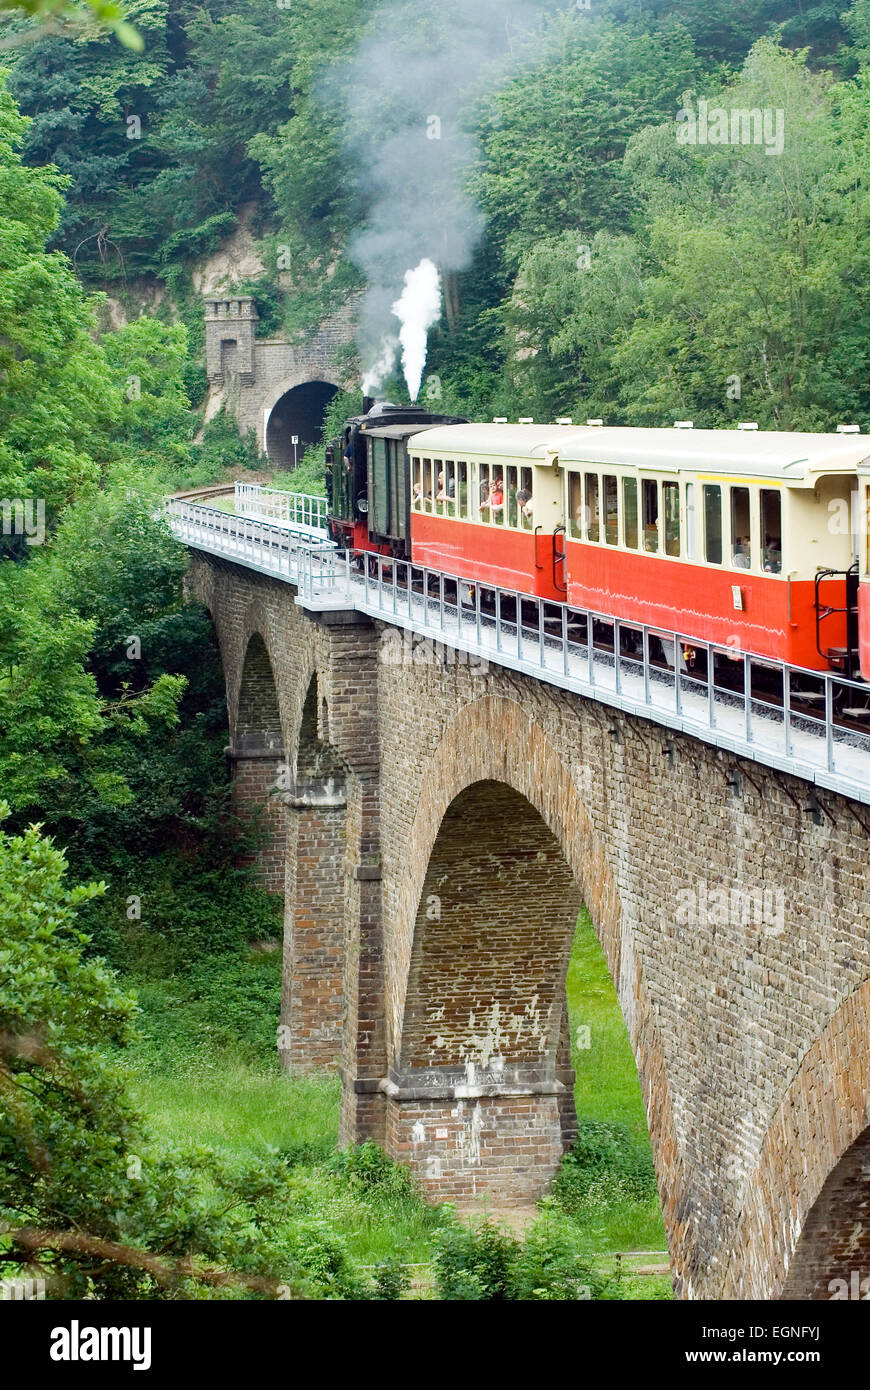 Locomotive à vapeur Vulkan Express ferroviaire historique de la vallée de Rhénanie-palatinat brohl allemagne europe Banque D'Images